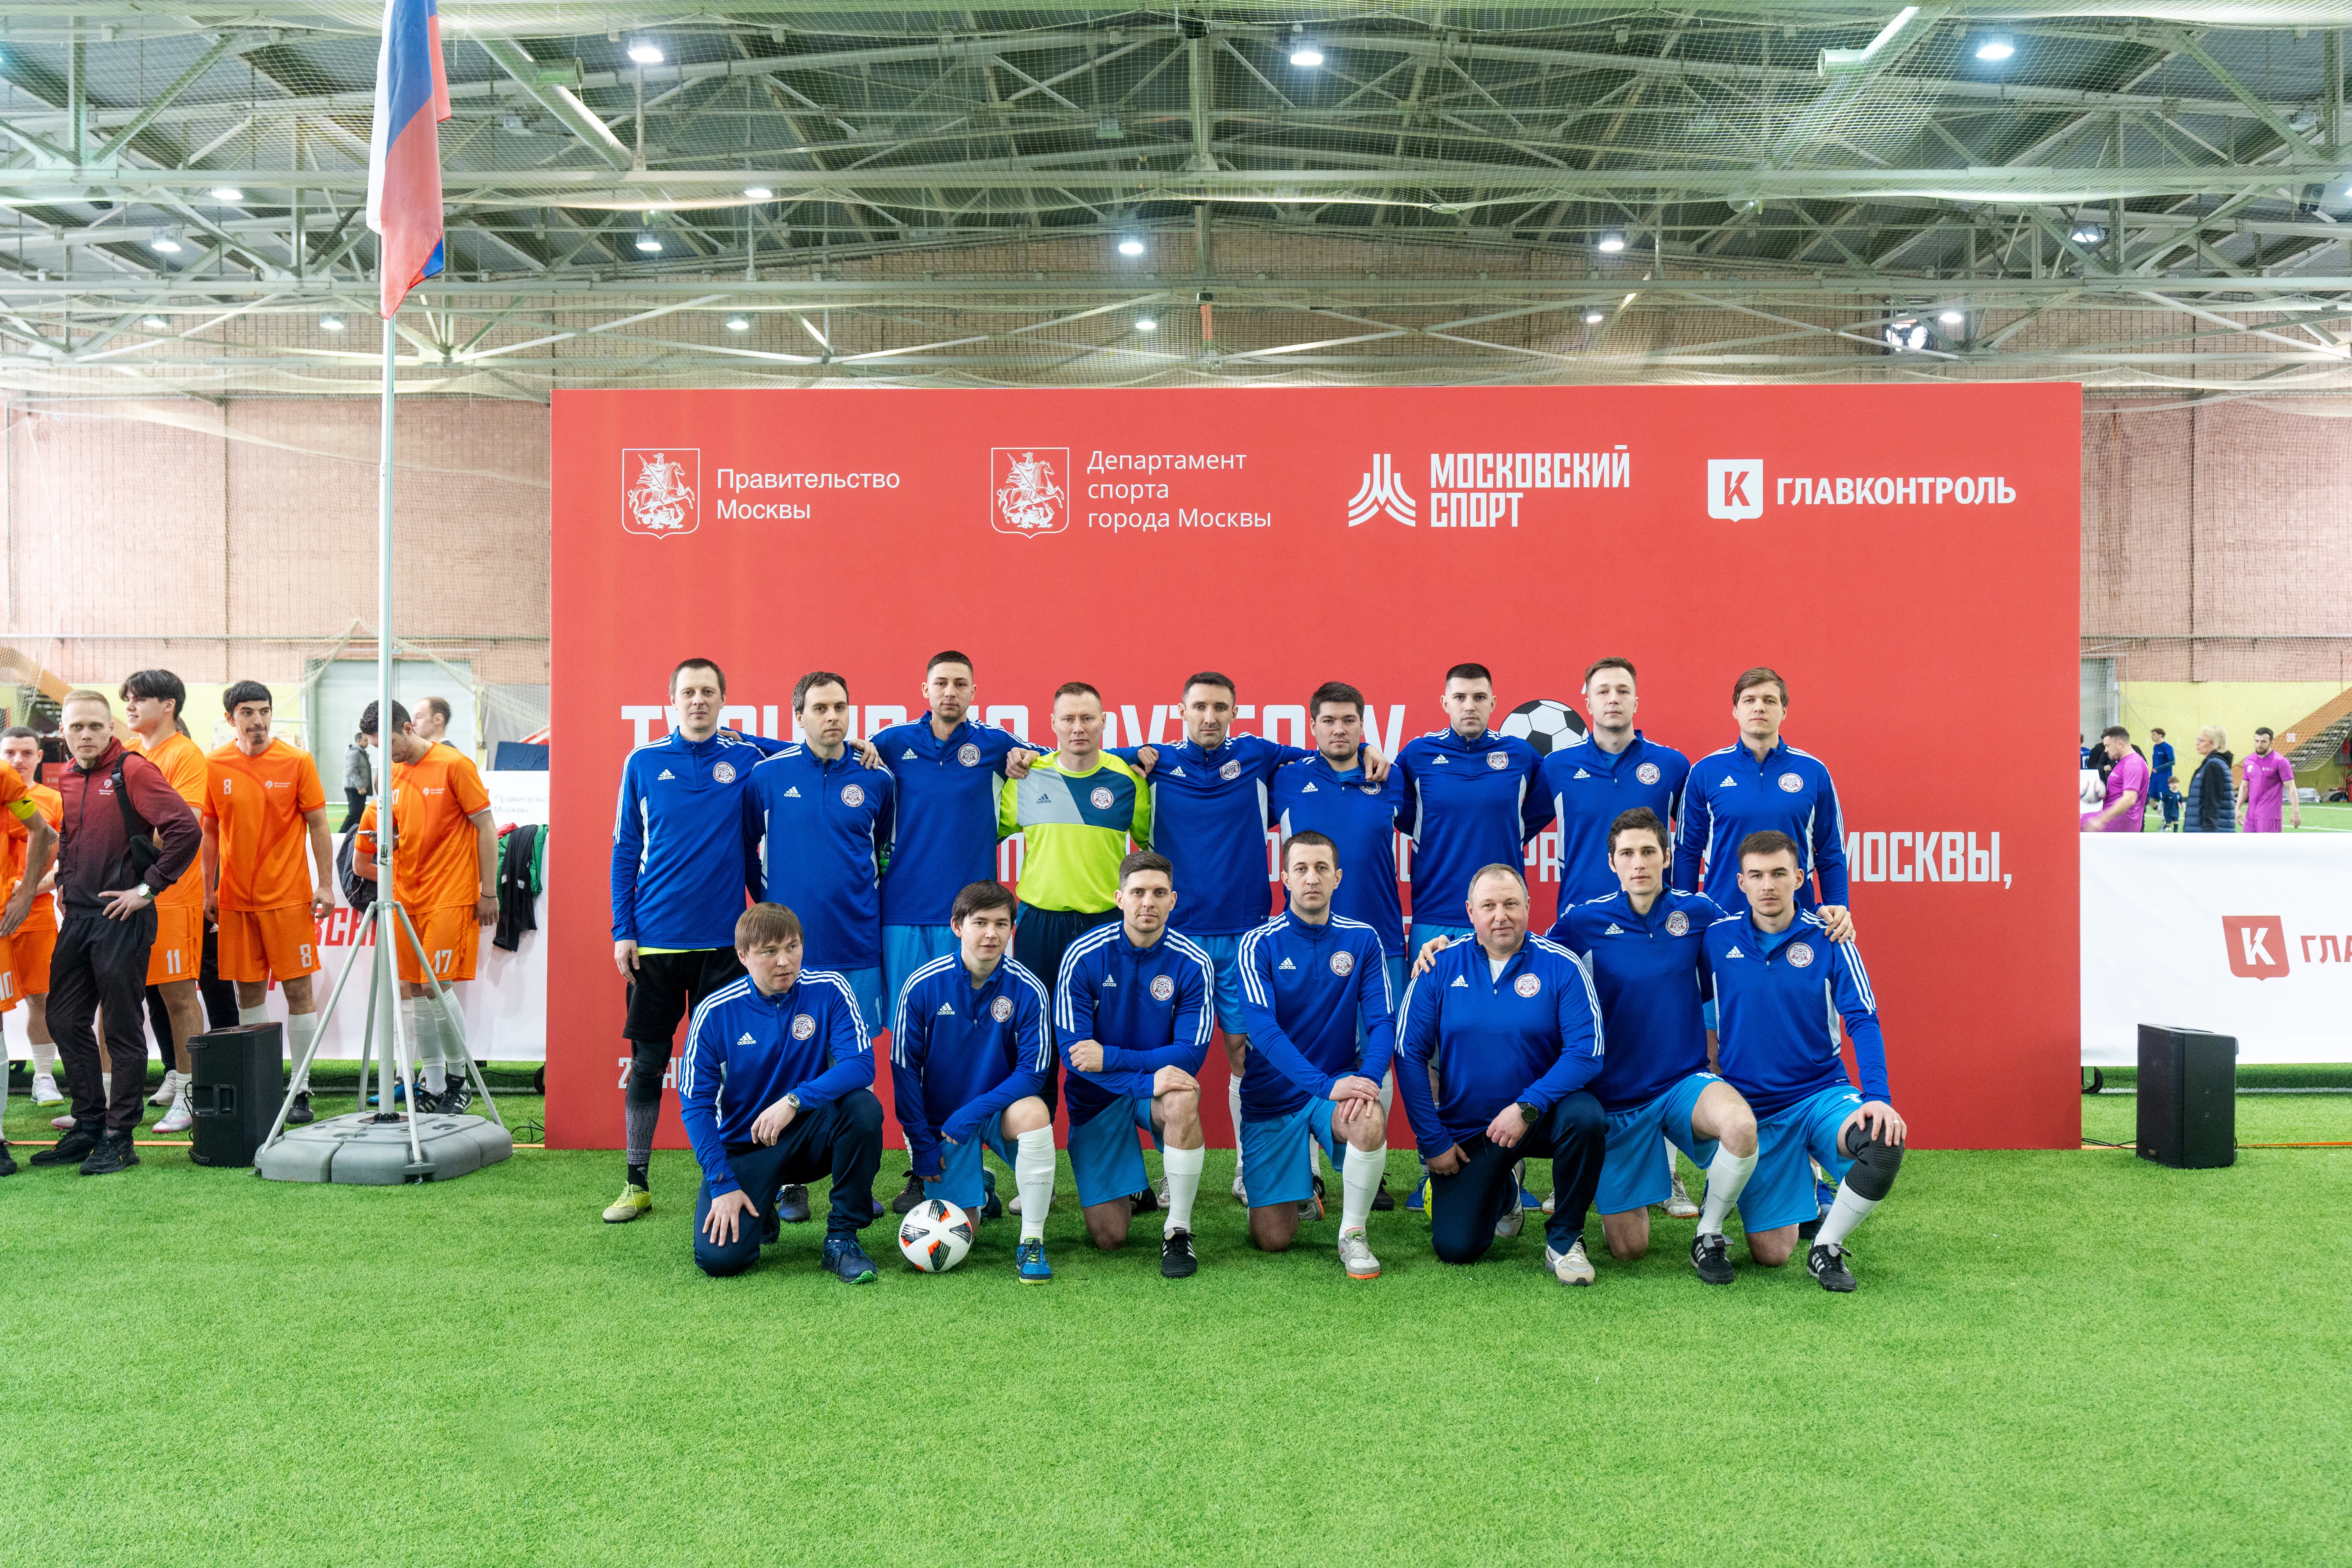 Команда Стройкомплекса Москвы приняла участие в футбольном турнире в манеже академии «Спартак»